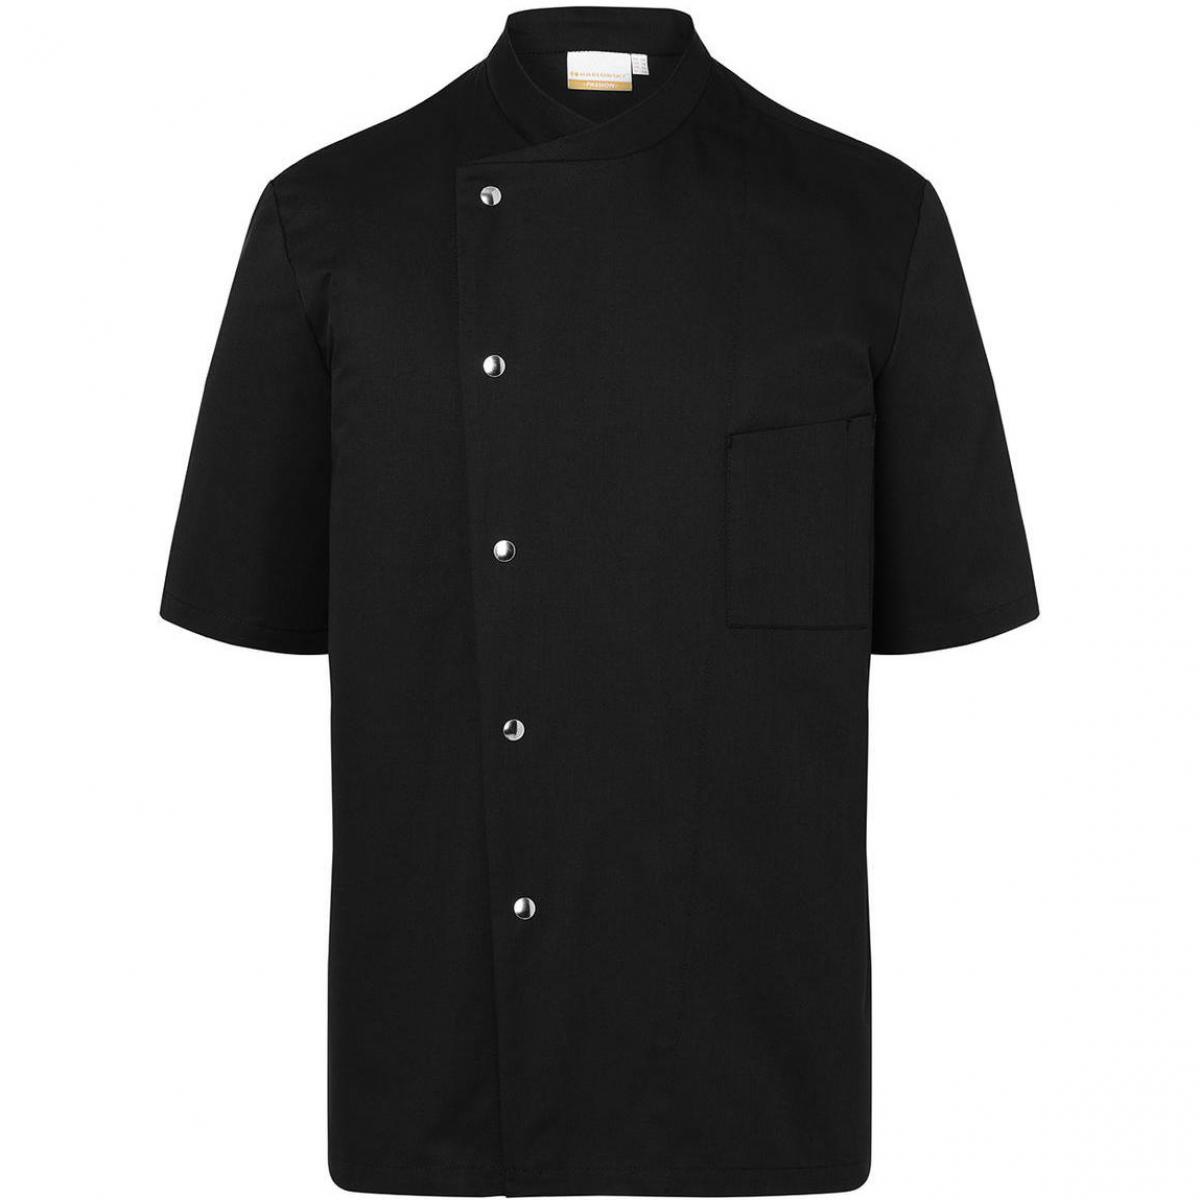 Hersteller: Karlowsky Herstellernummer: JM 15 Artikelbezeichnung: Chef Jacket Gustav Short Sleeve Waschbar bis 95°C Farbe: Black